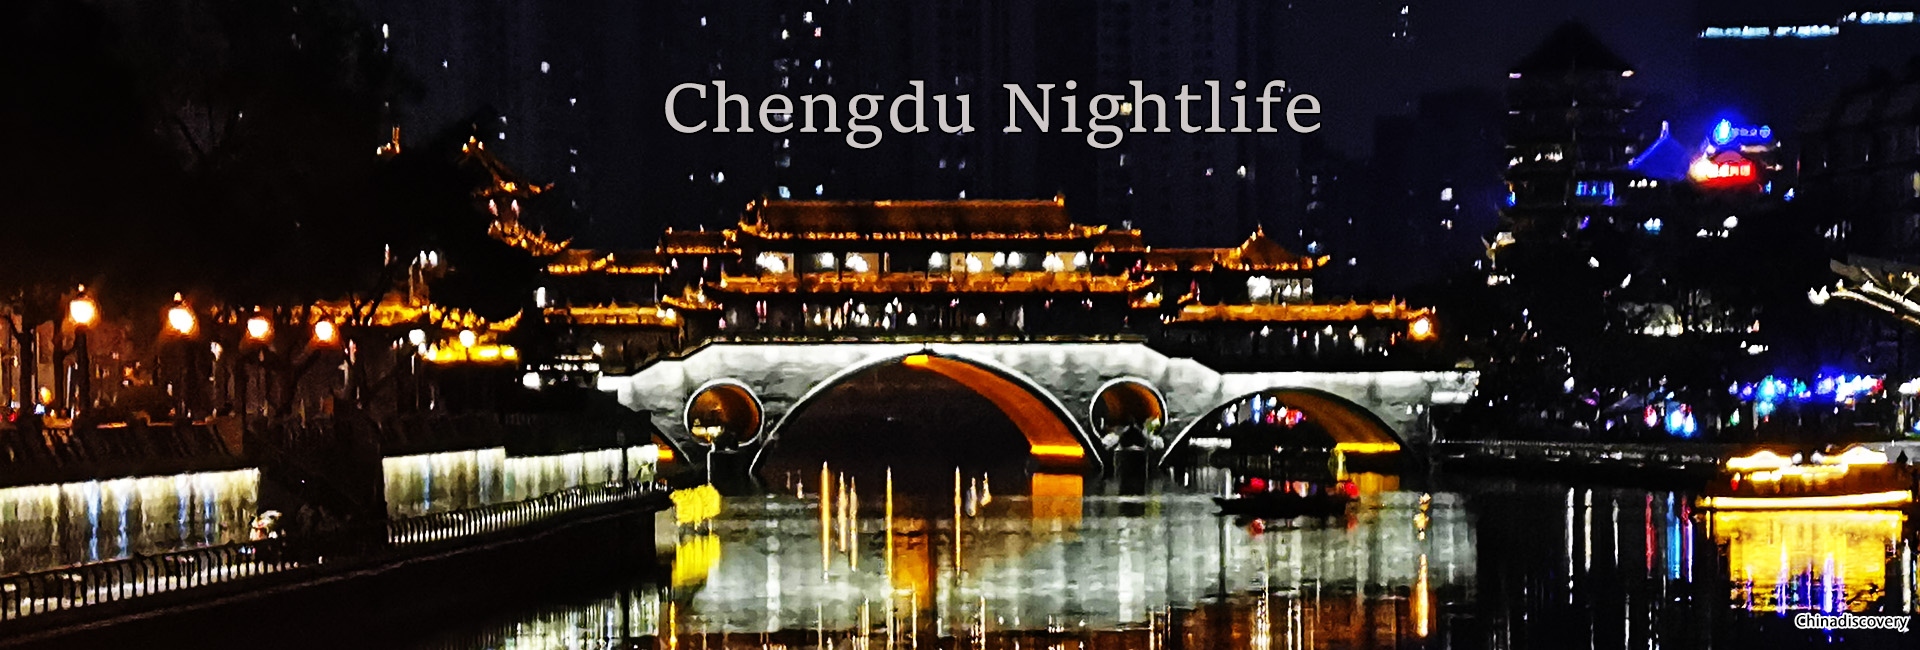 Chengdu Nightlife